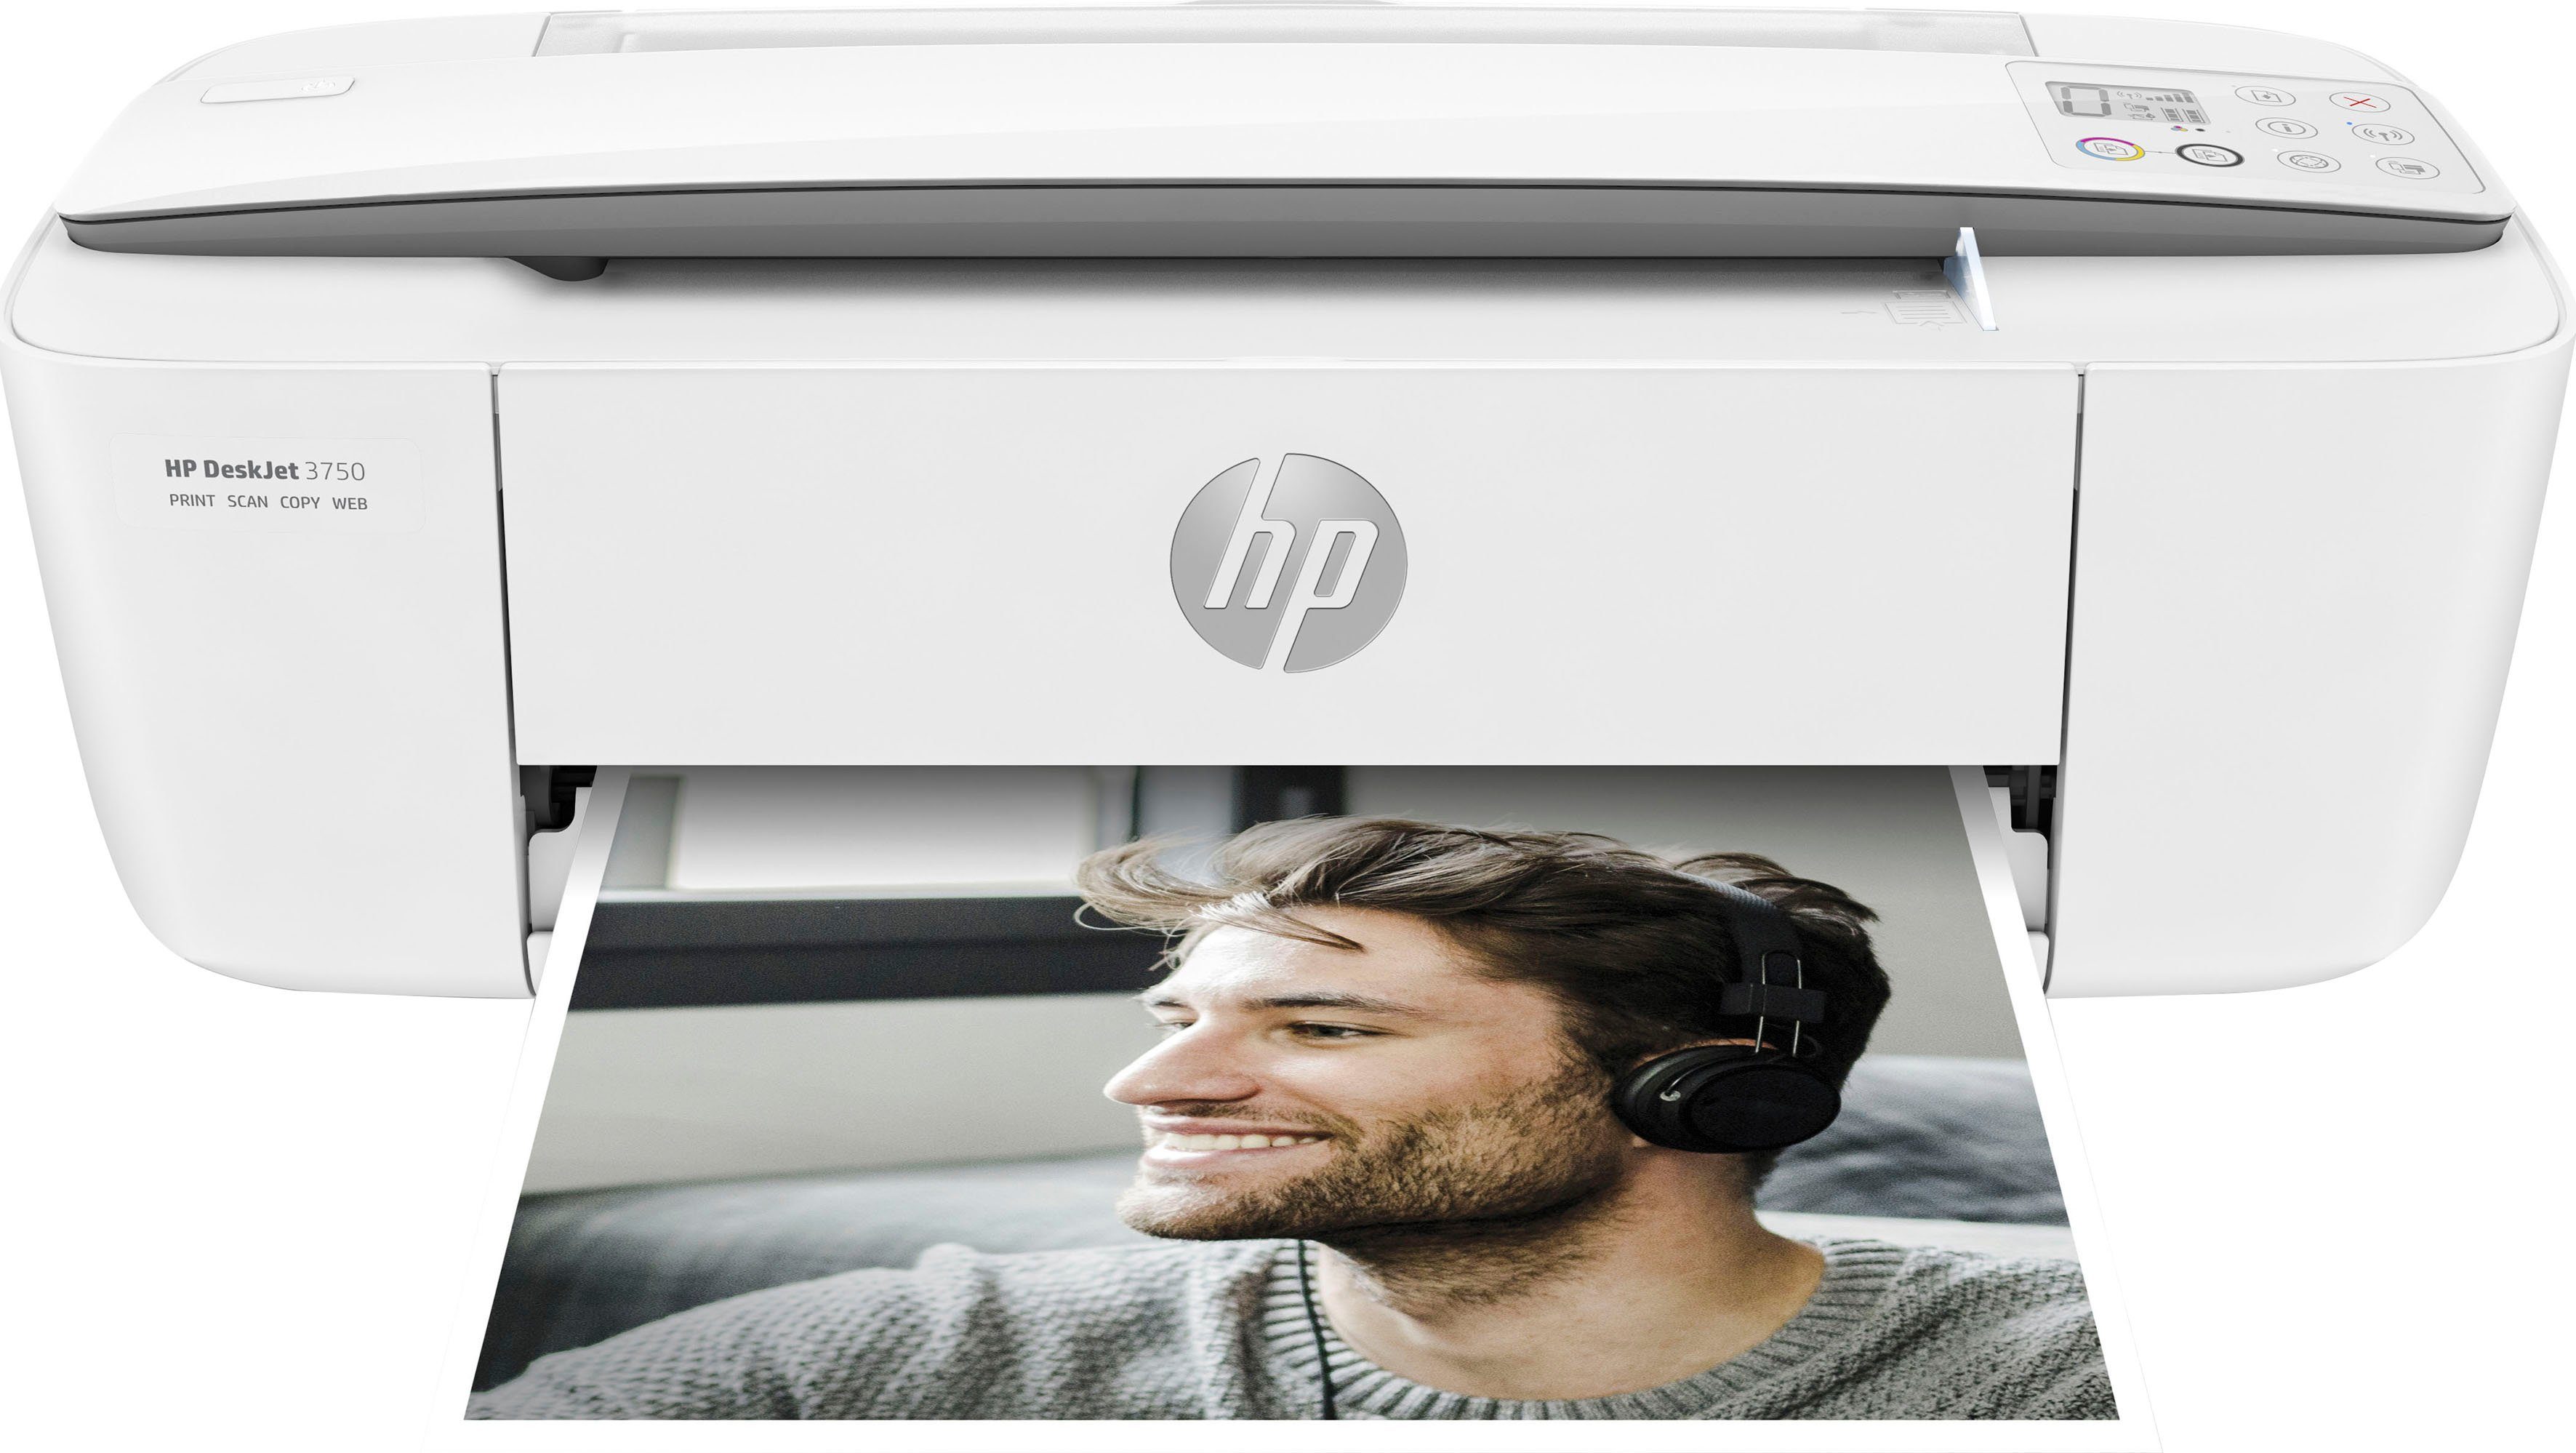 3750 (WLAN Multifunktionsdrucker, Drucker Instant (Wi-Fi), HP+ DeskJet Ink HP kompatibel)